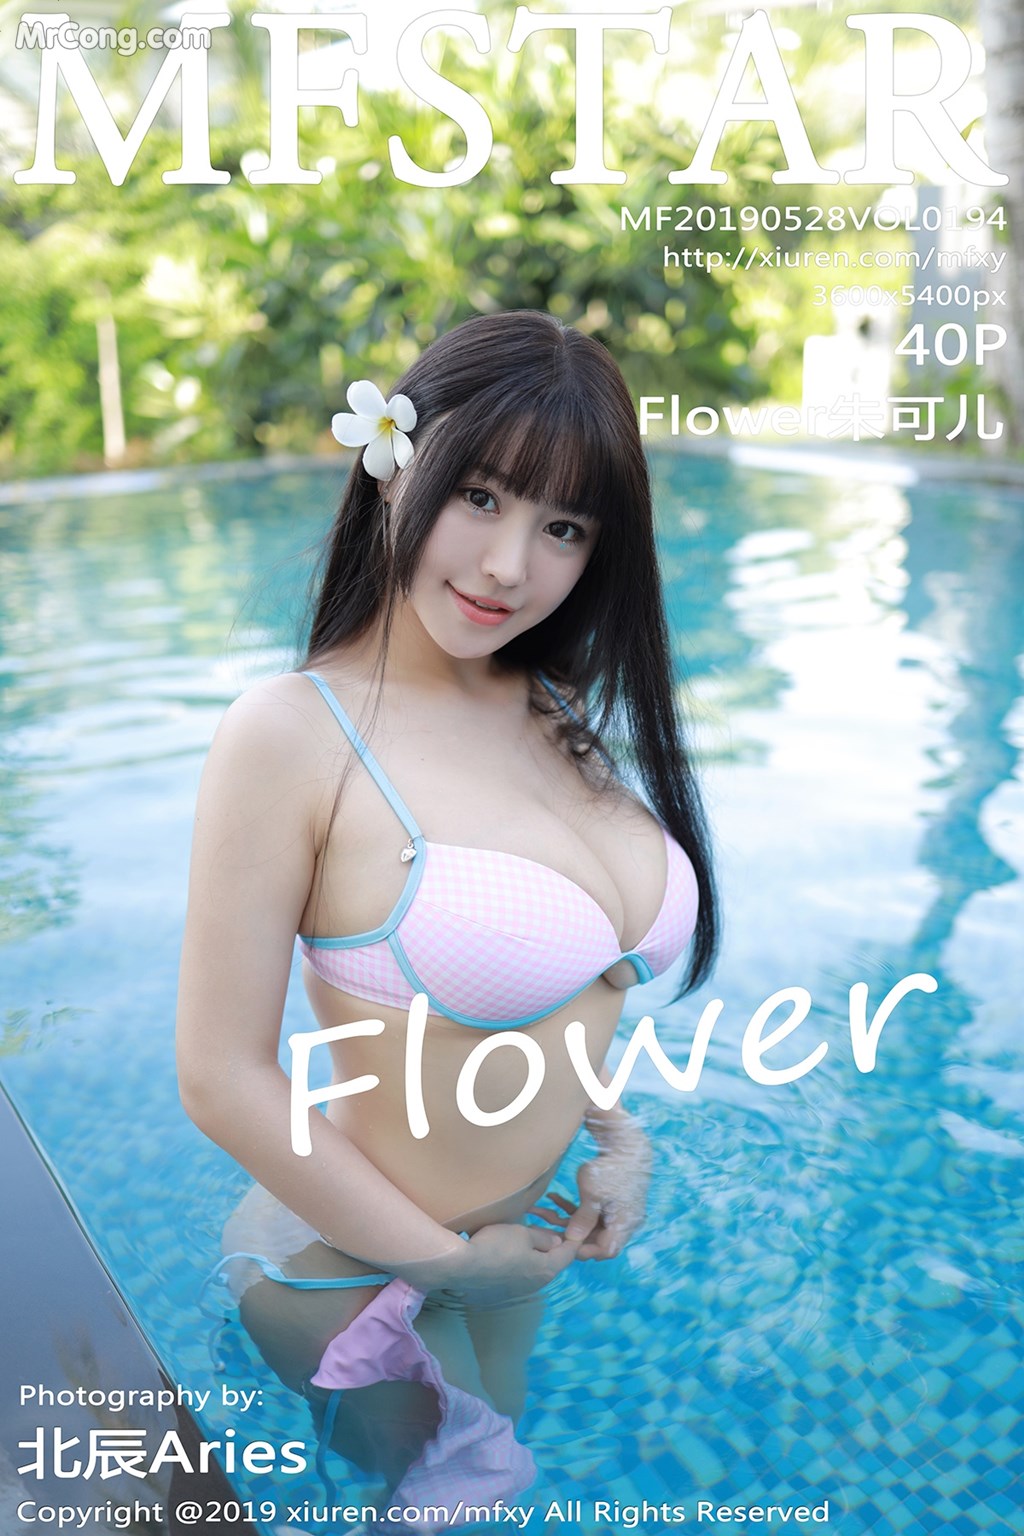 MFStar Vol.194: Zhu Ke Er (Flower 朱 可 儿) (41 pictures)